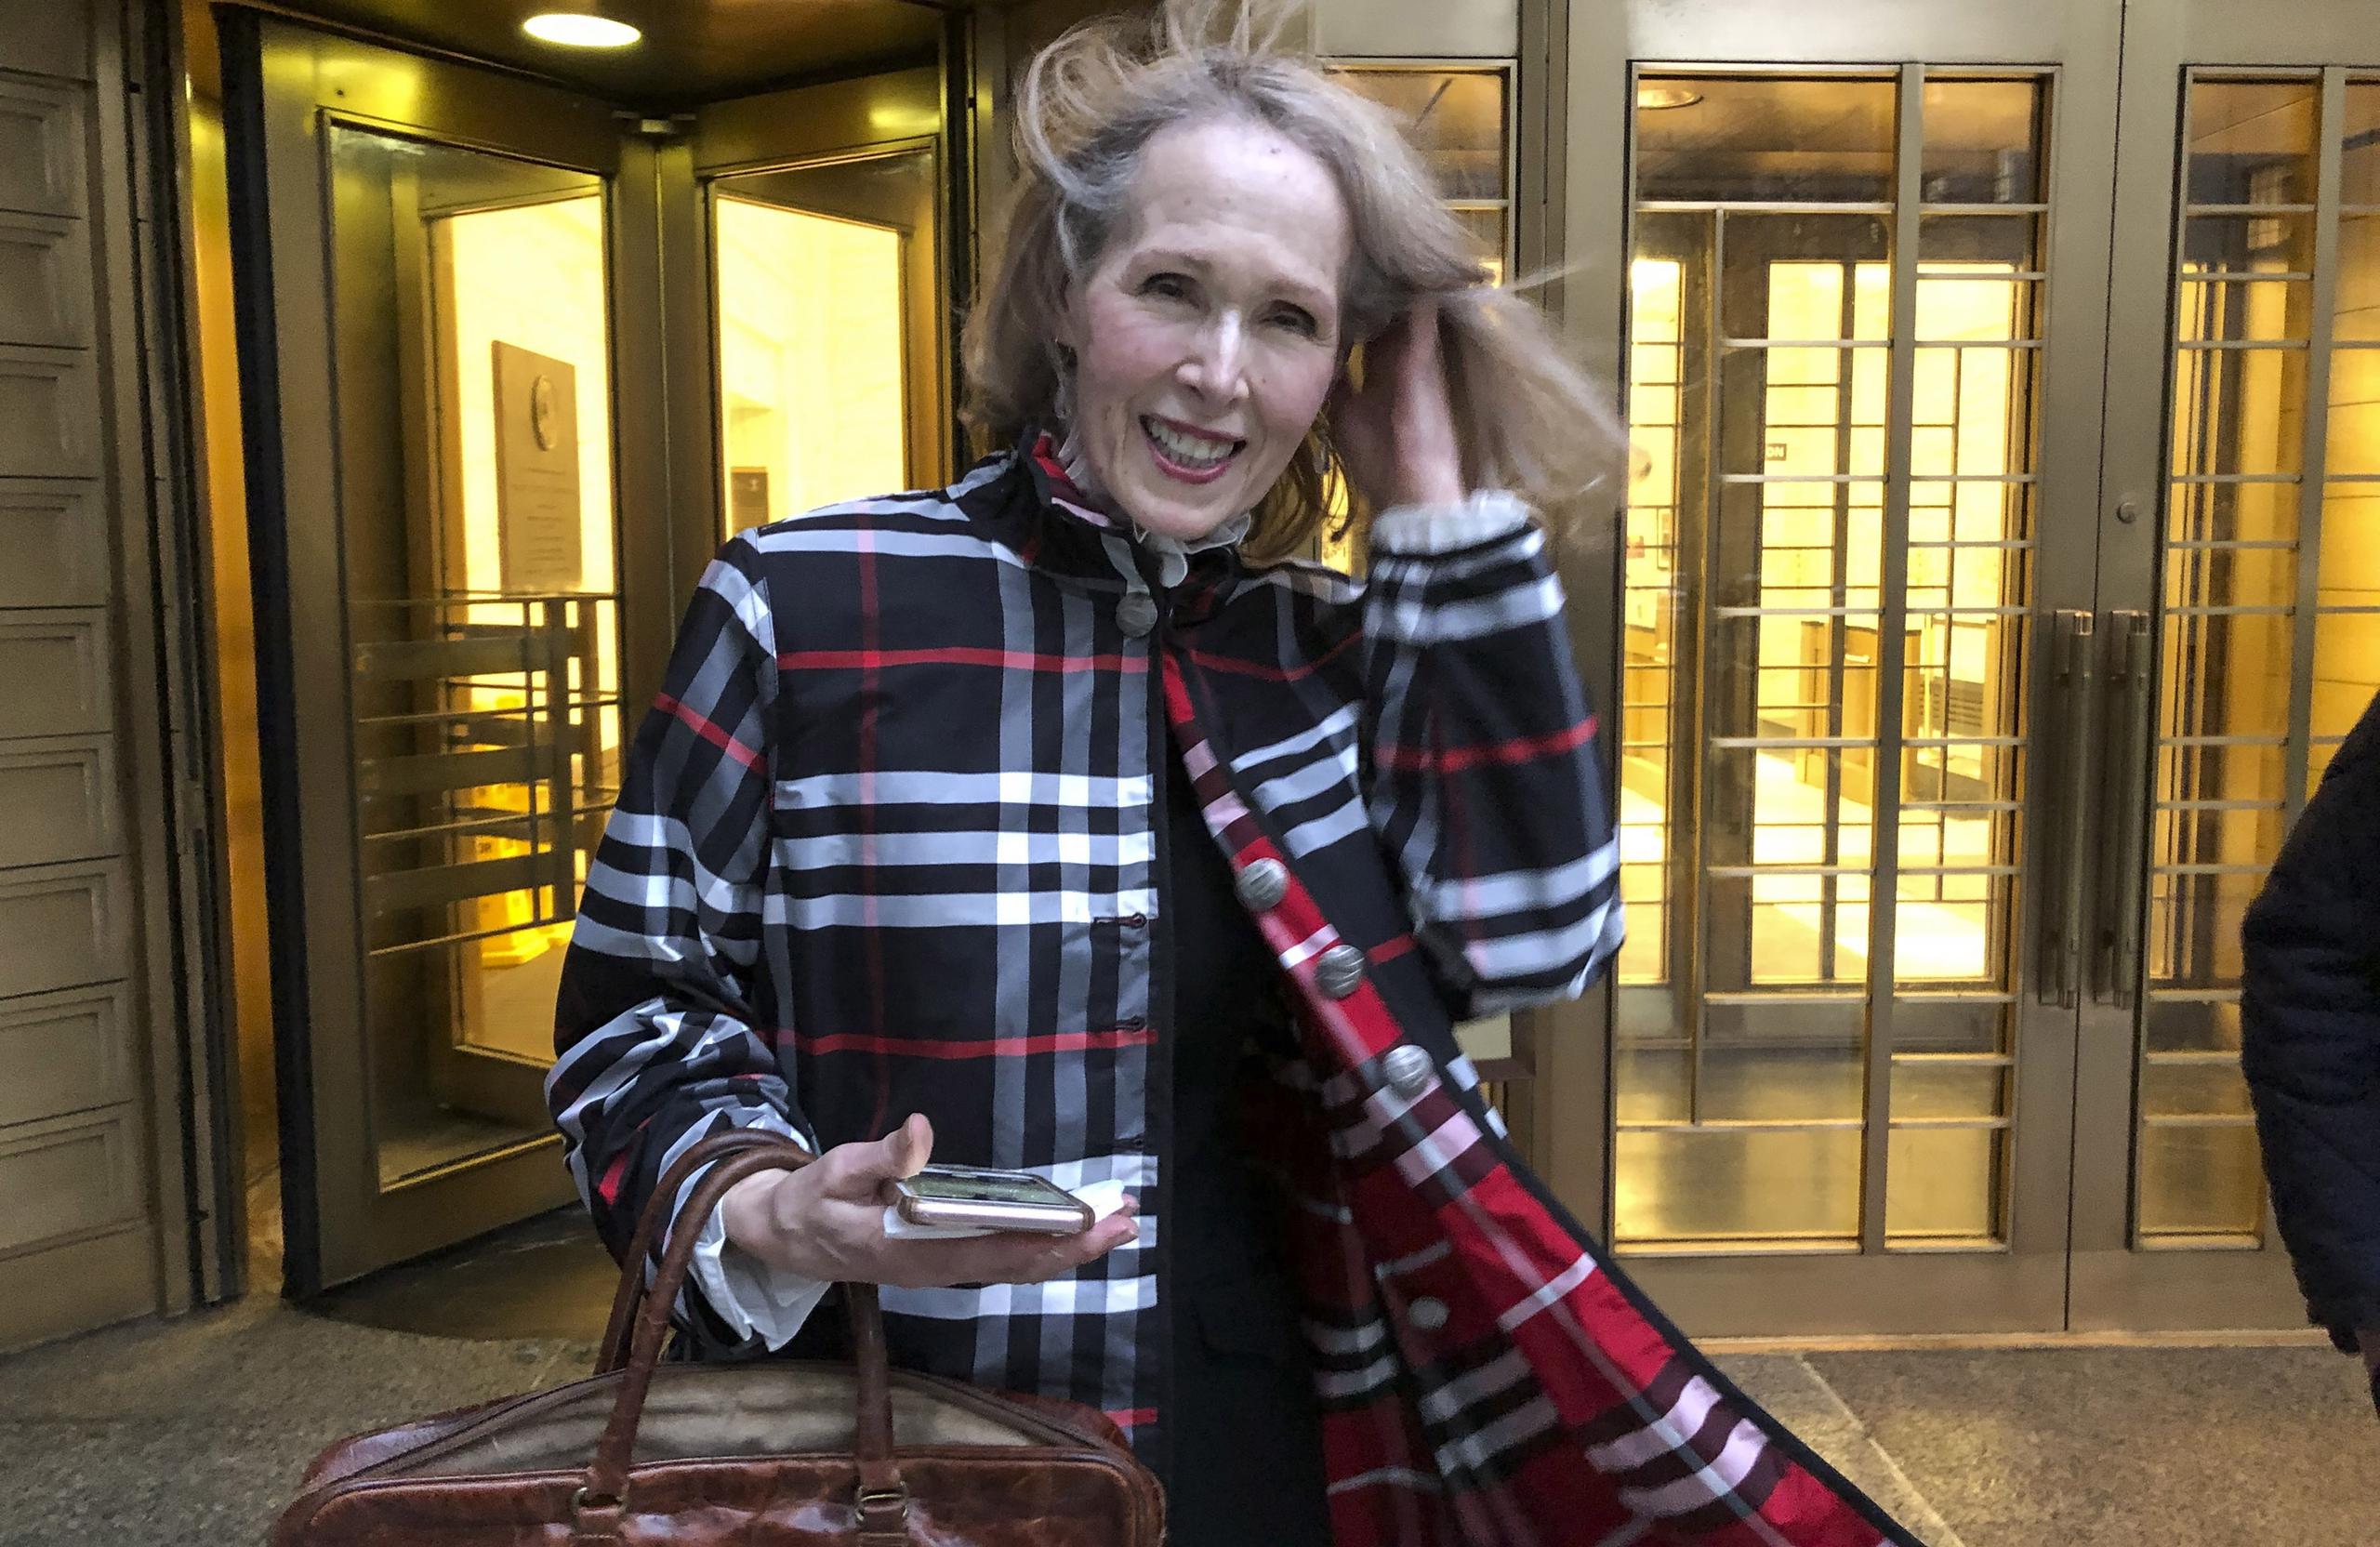 La columnista E. Jean Carroll demandó al expresidente Donald Trump en 2019, alegando que la violó a mediados de la década de 1990 en un vestidor en la gran tienda Bergdorf Goodman en Manhattan, luego mintió sobre el hecho y la calumnió cuando ella decidió publicar la historia.